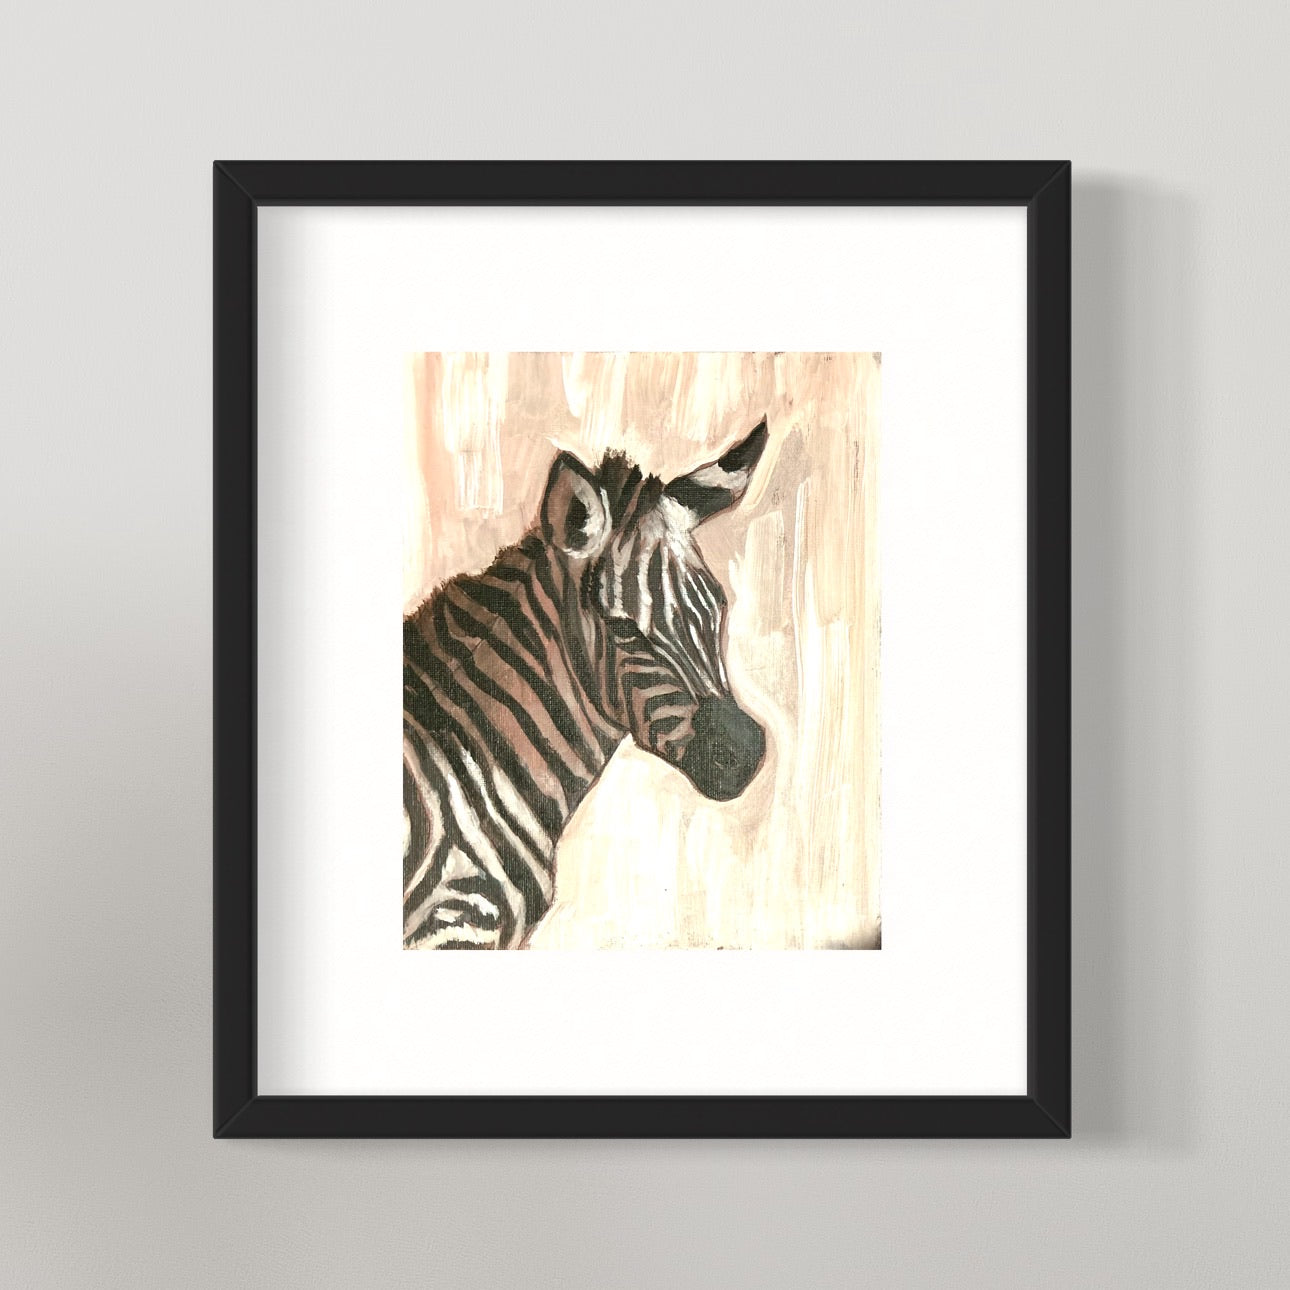 Framed zebra painting.